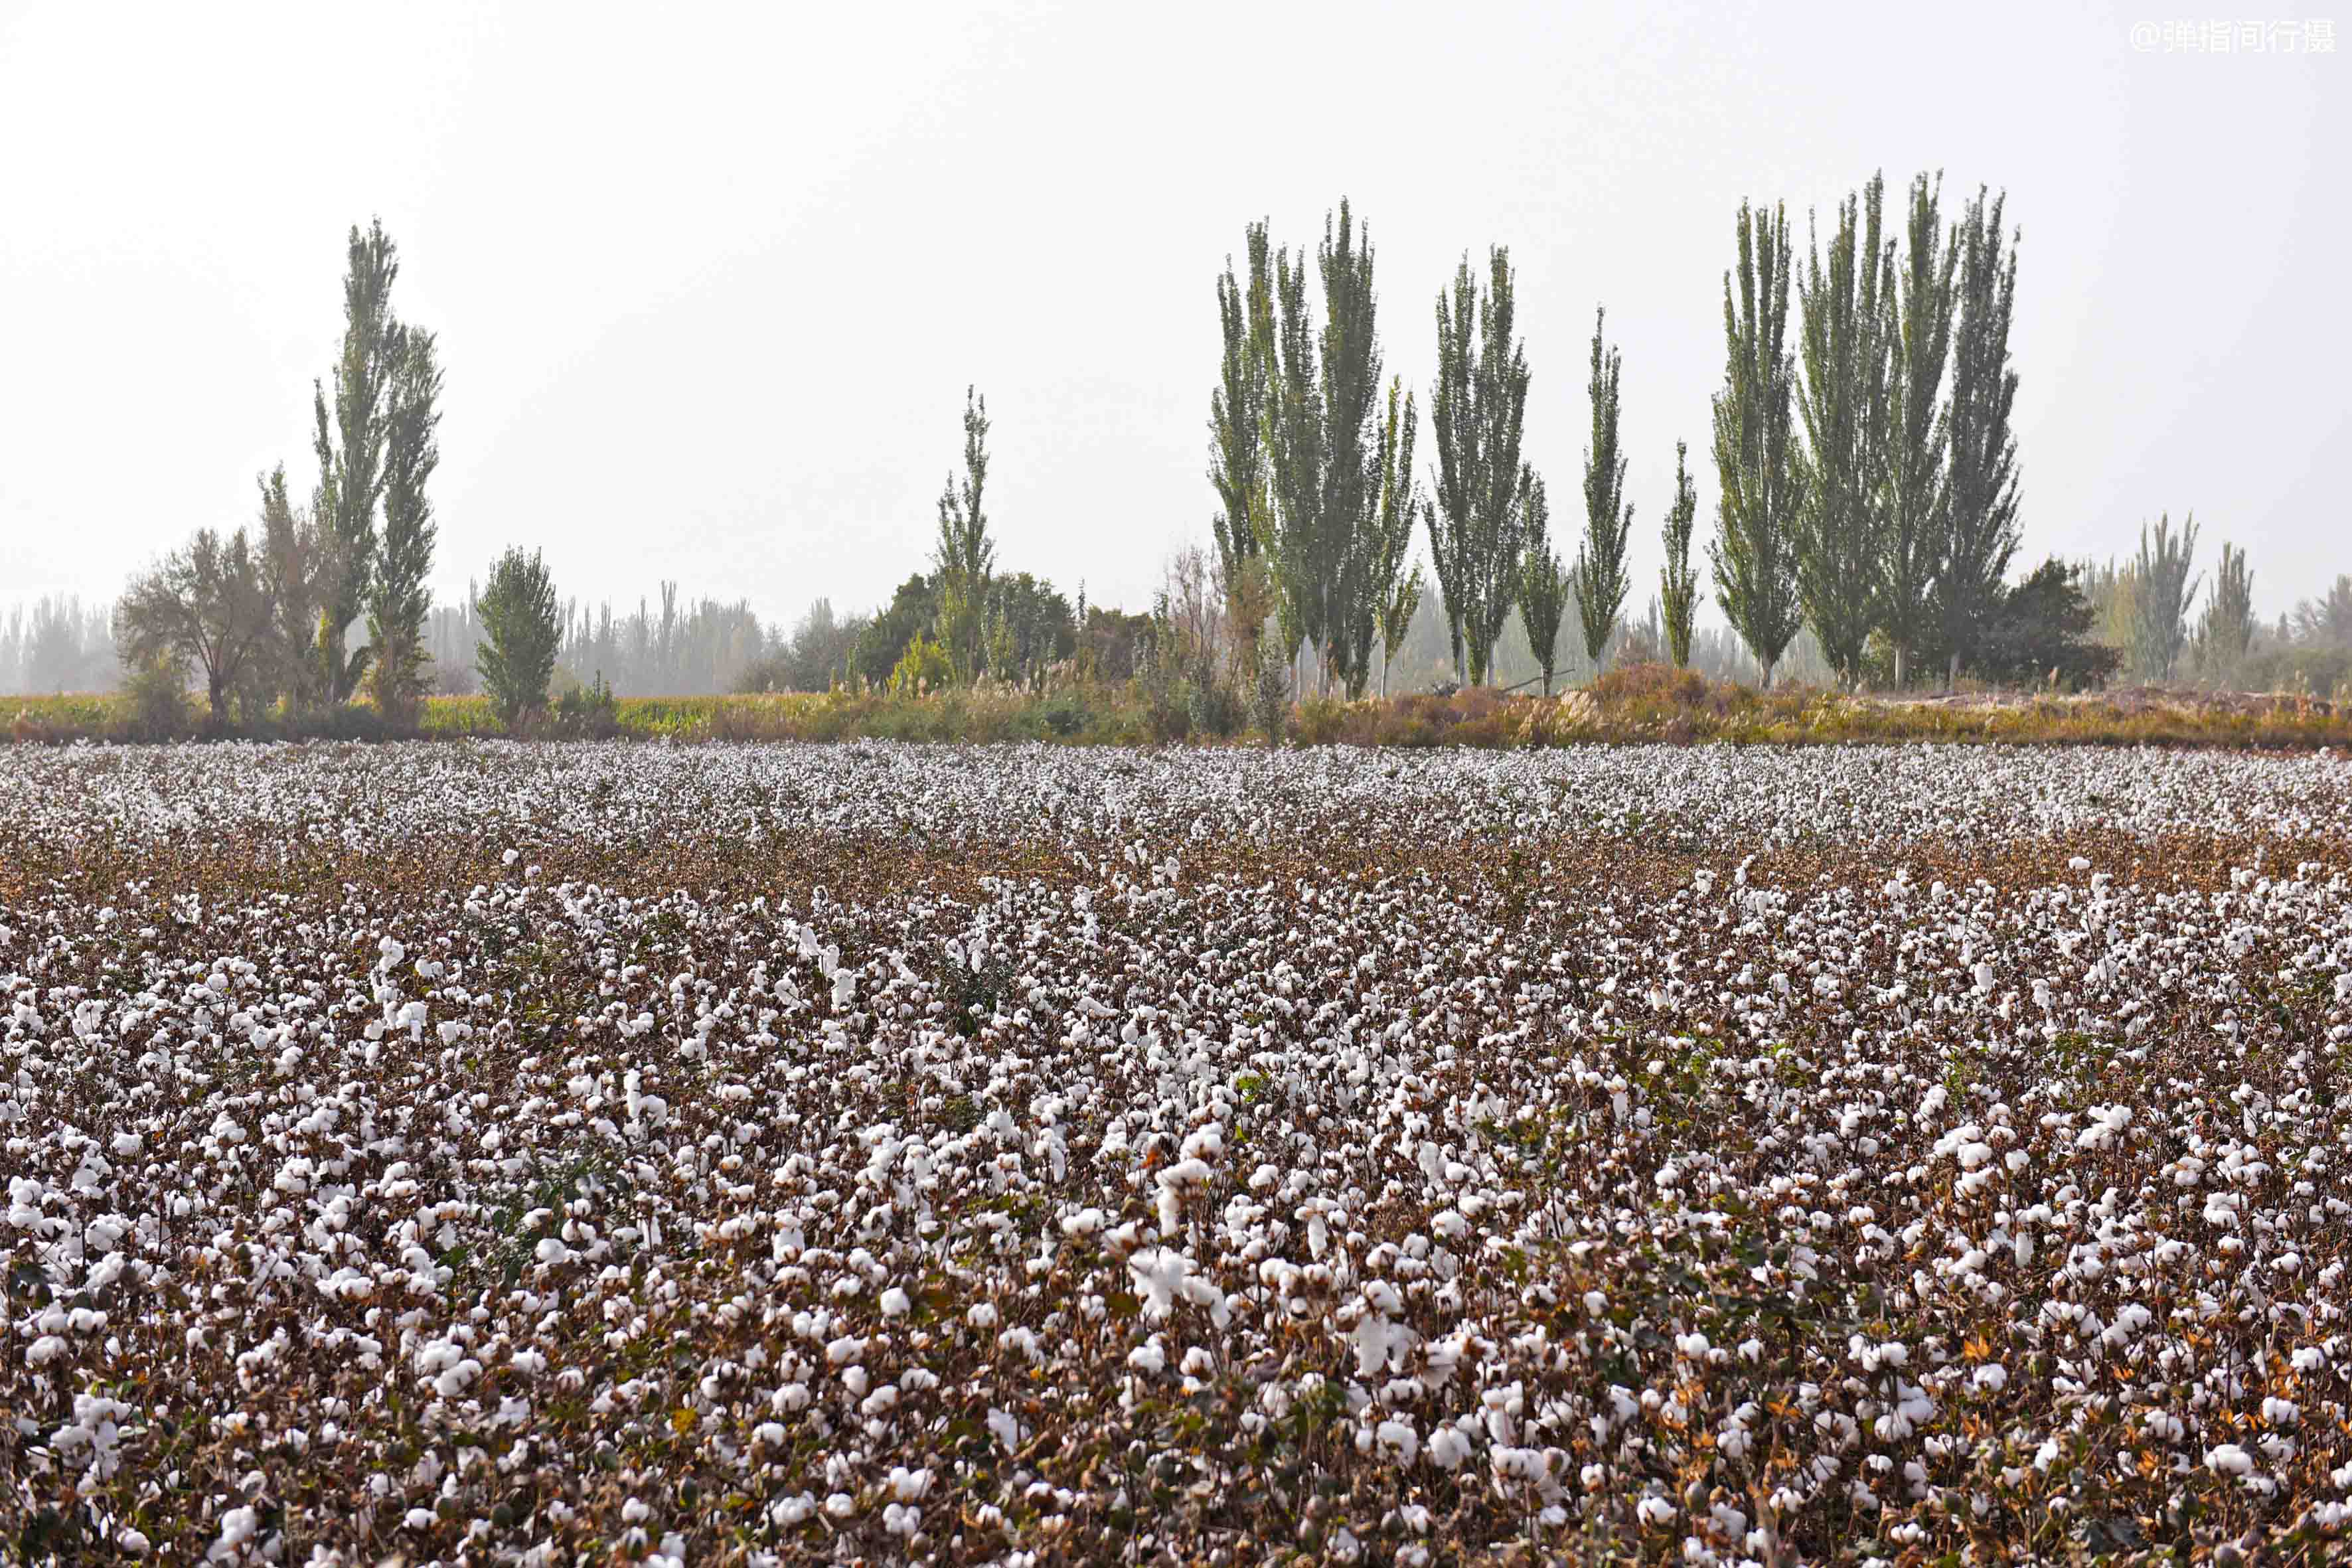 新疆棉花种植巨变,昔日采棉大军争相淘金,如今机器取代人工